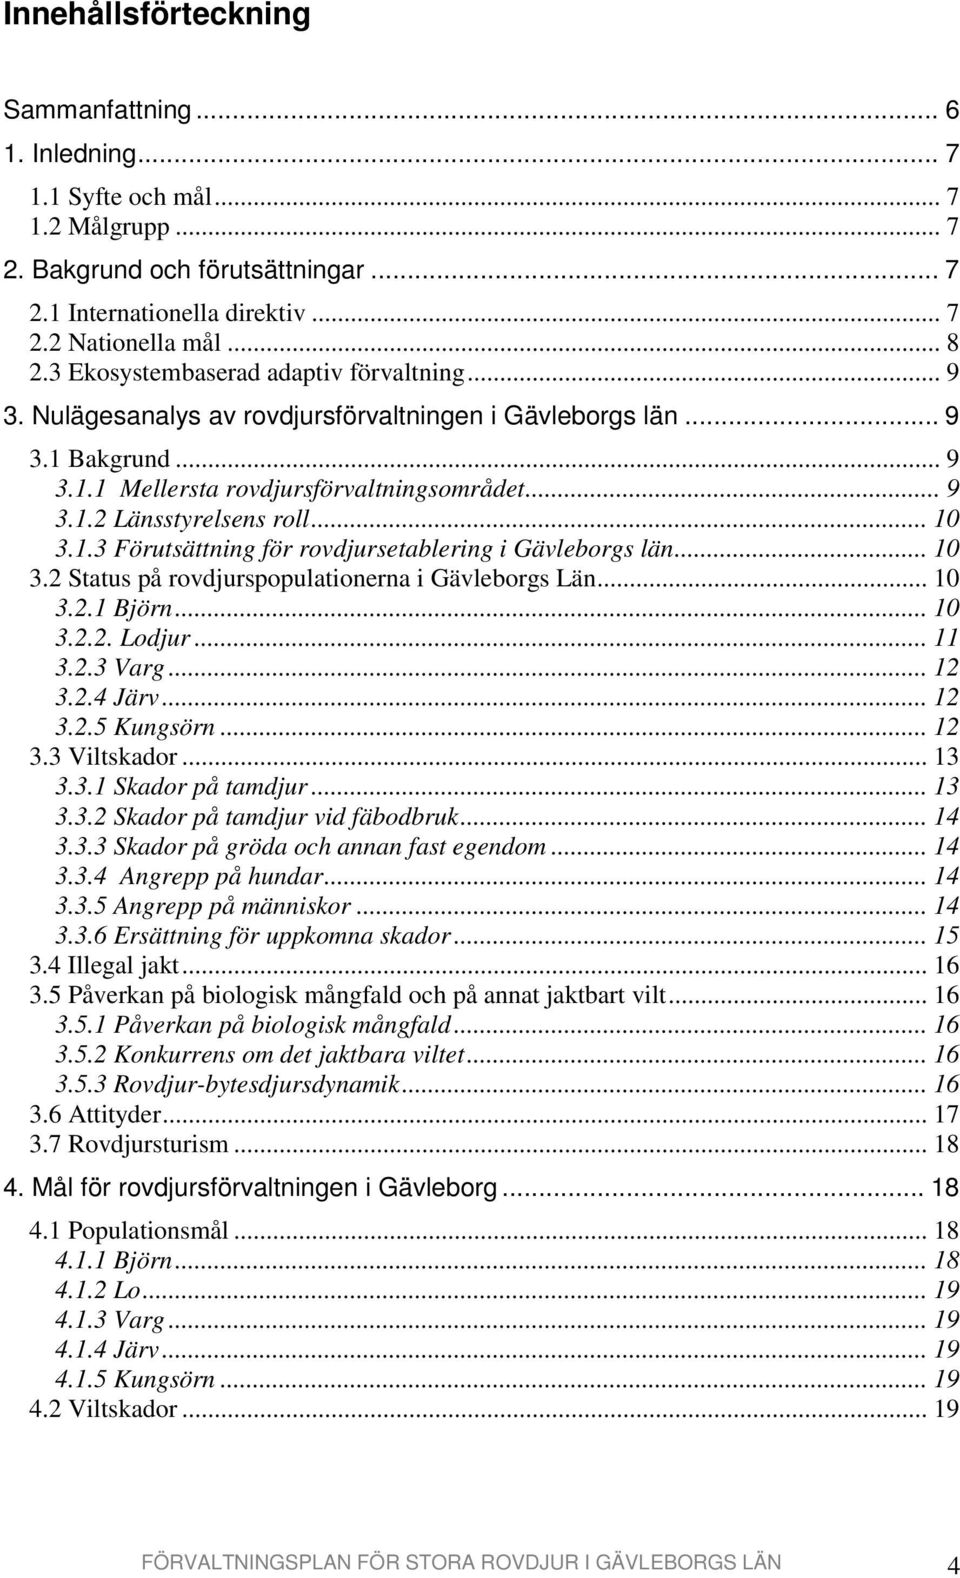 .. 10 3.1.3 Förutsättning för rovdjursetablering i Gävleborgs län... 10 3.2 Status på rovdjurspopulationerna i Gävleborgs Län... 10 3.2.1 Björn... 10 3.2.2. Lodjur... 11 3.2.3 Varg... 12 3.2.4 Järv.